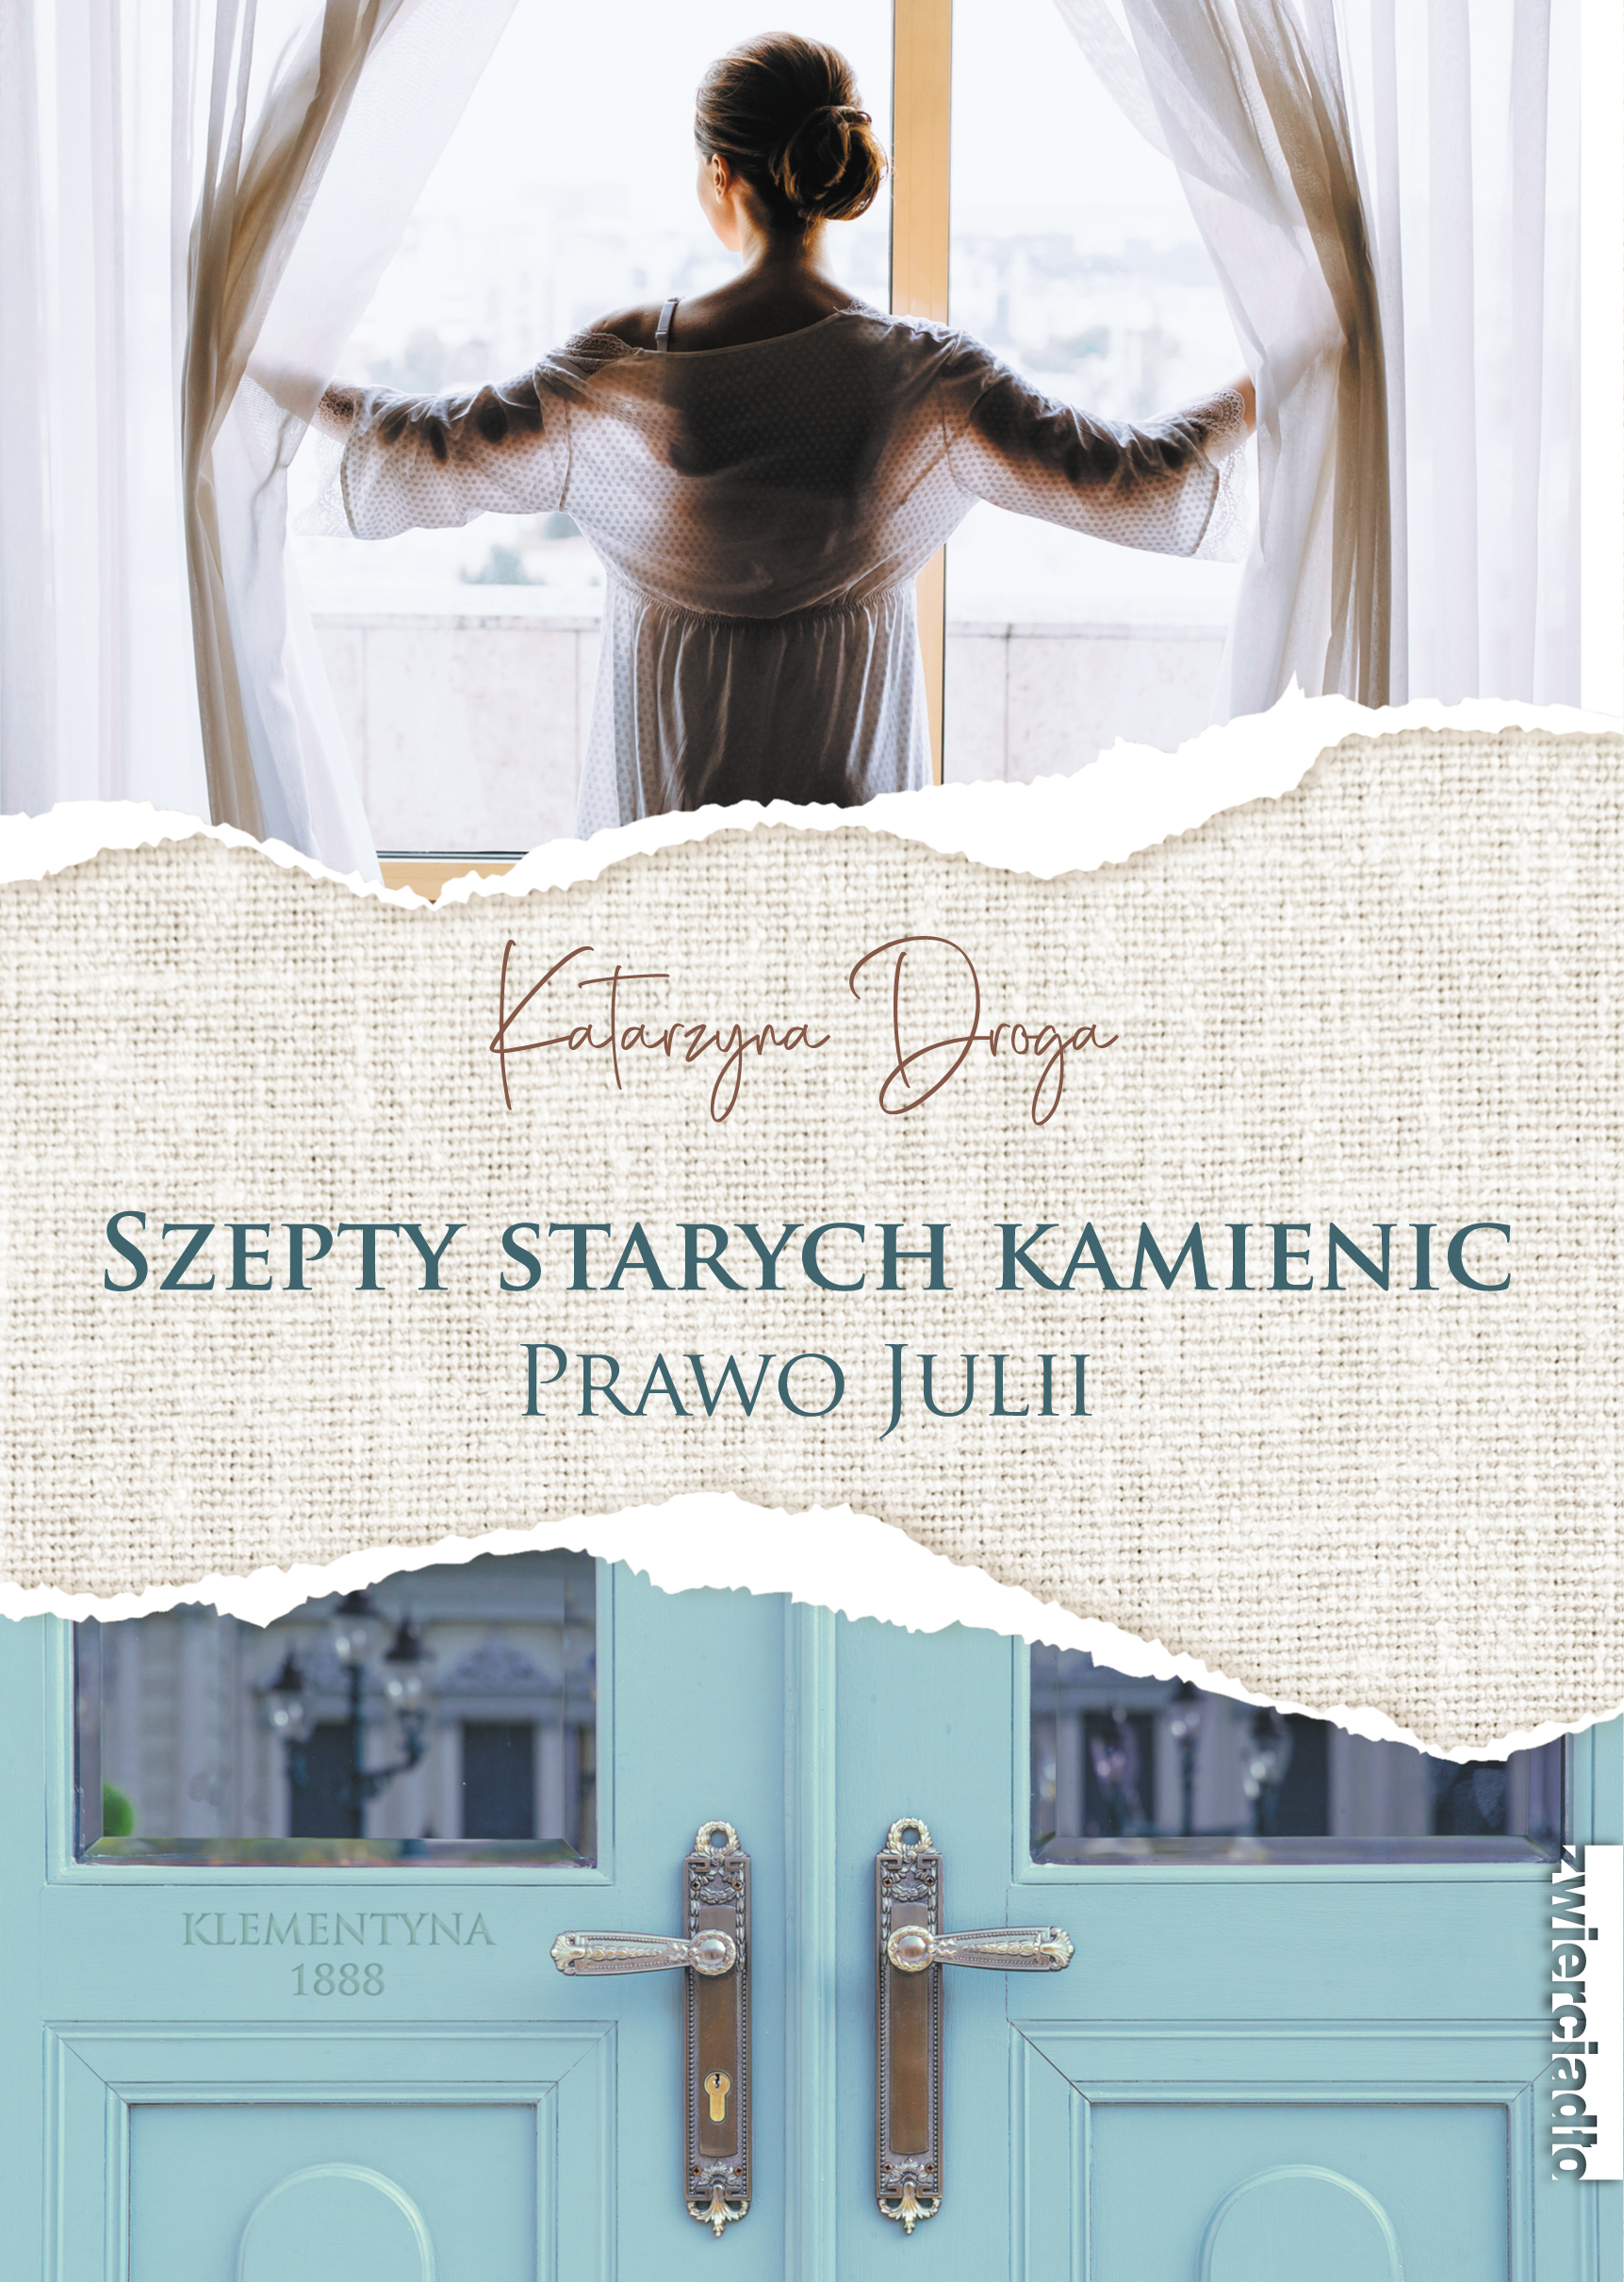 U góry okładki stojąca w oknie kobieta odgarniająca zasłony, na dole miętowe wejściowe dwuskrzydłowe drzwi